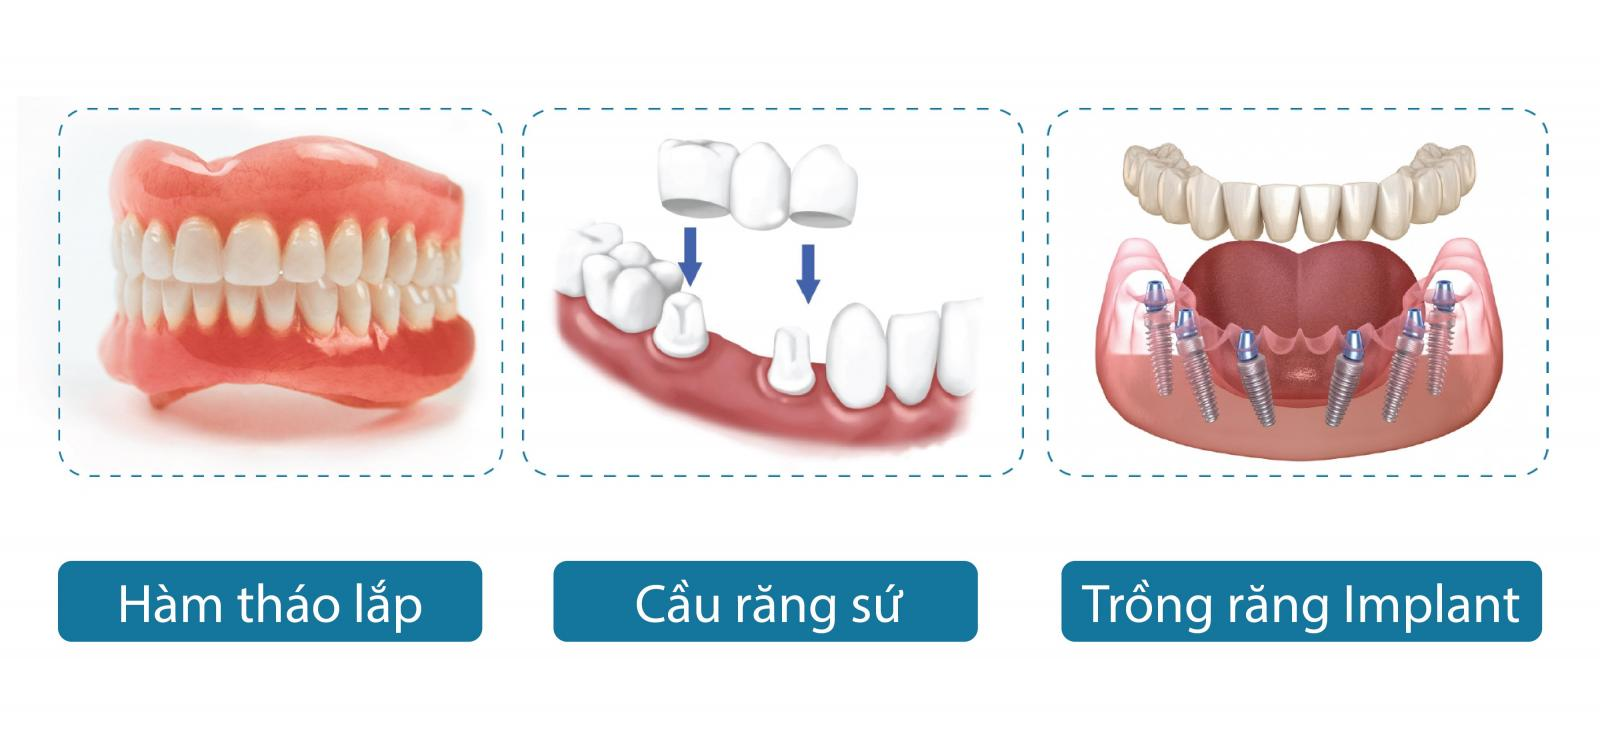 So sánh trồng răng Implant, cầu răng sứ và hàm tháo lắp? 